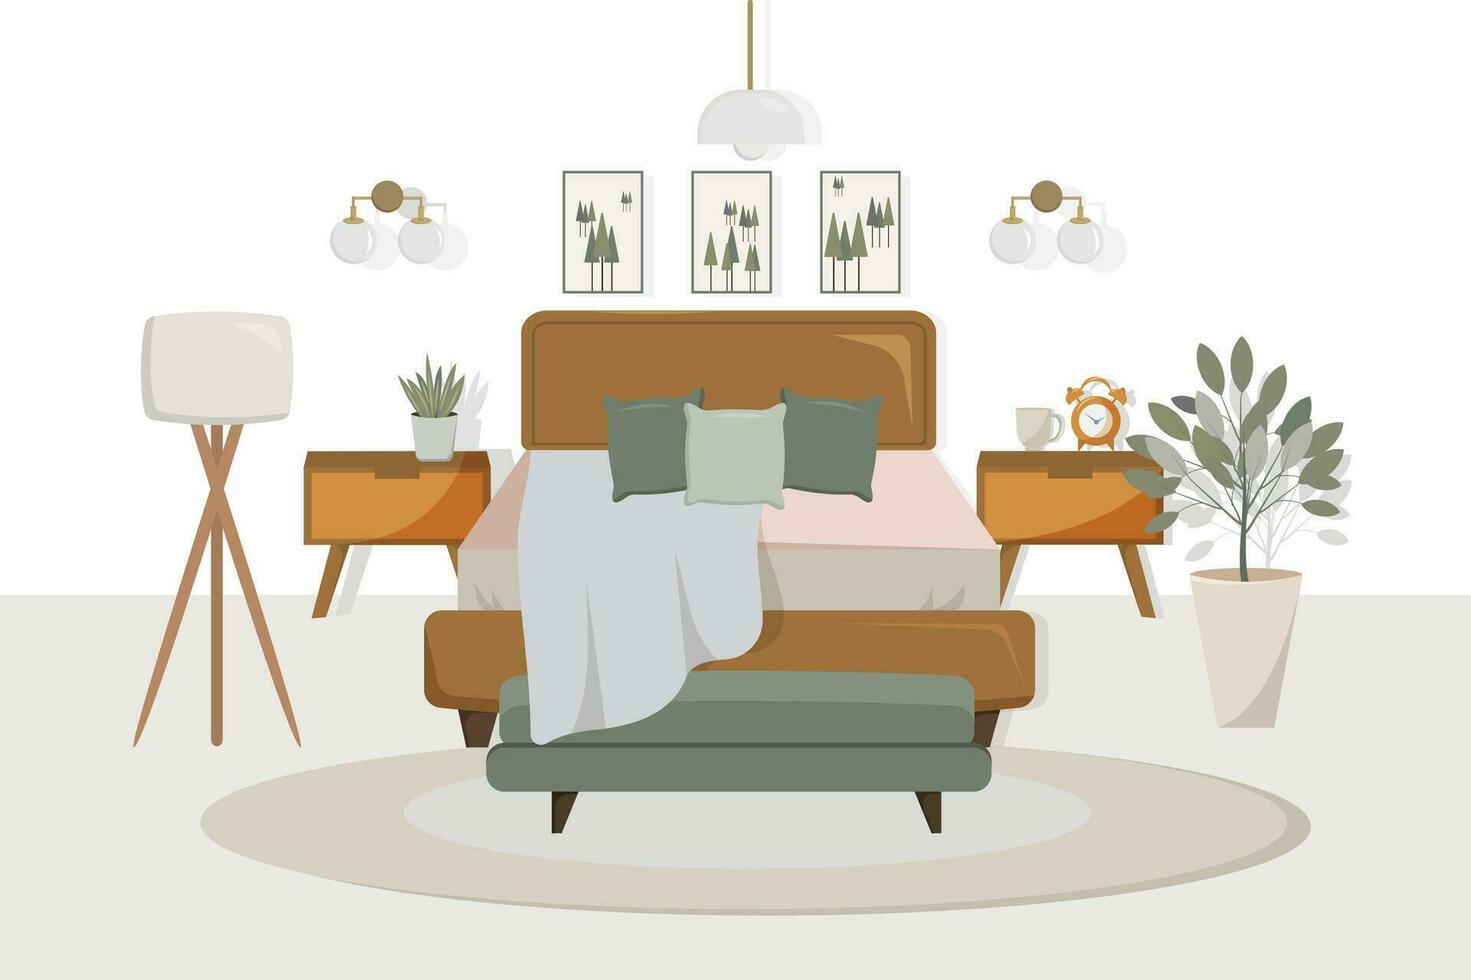 Bedroom interior 1, vector illustration